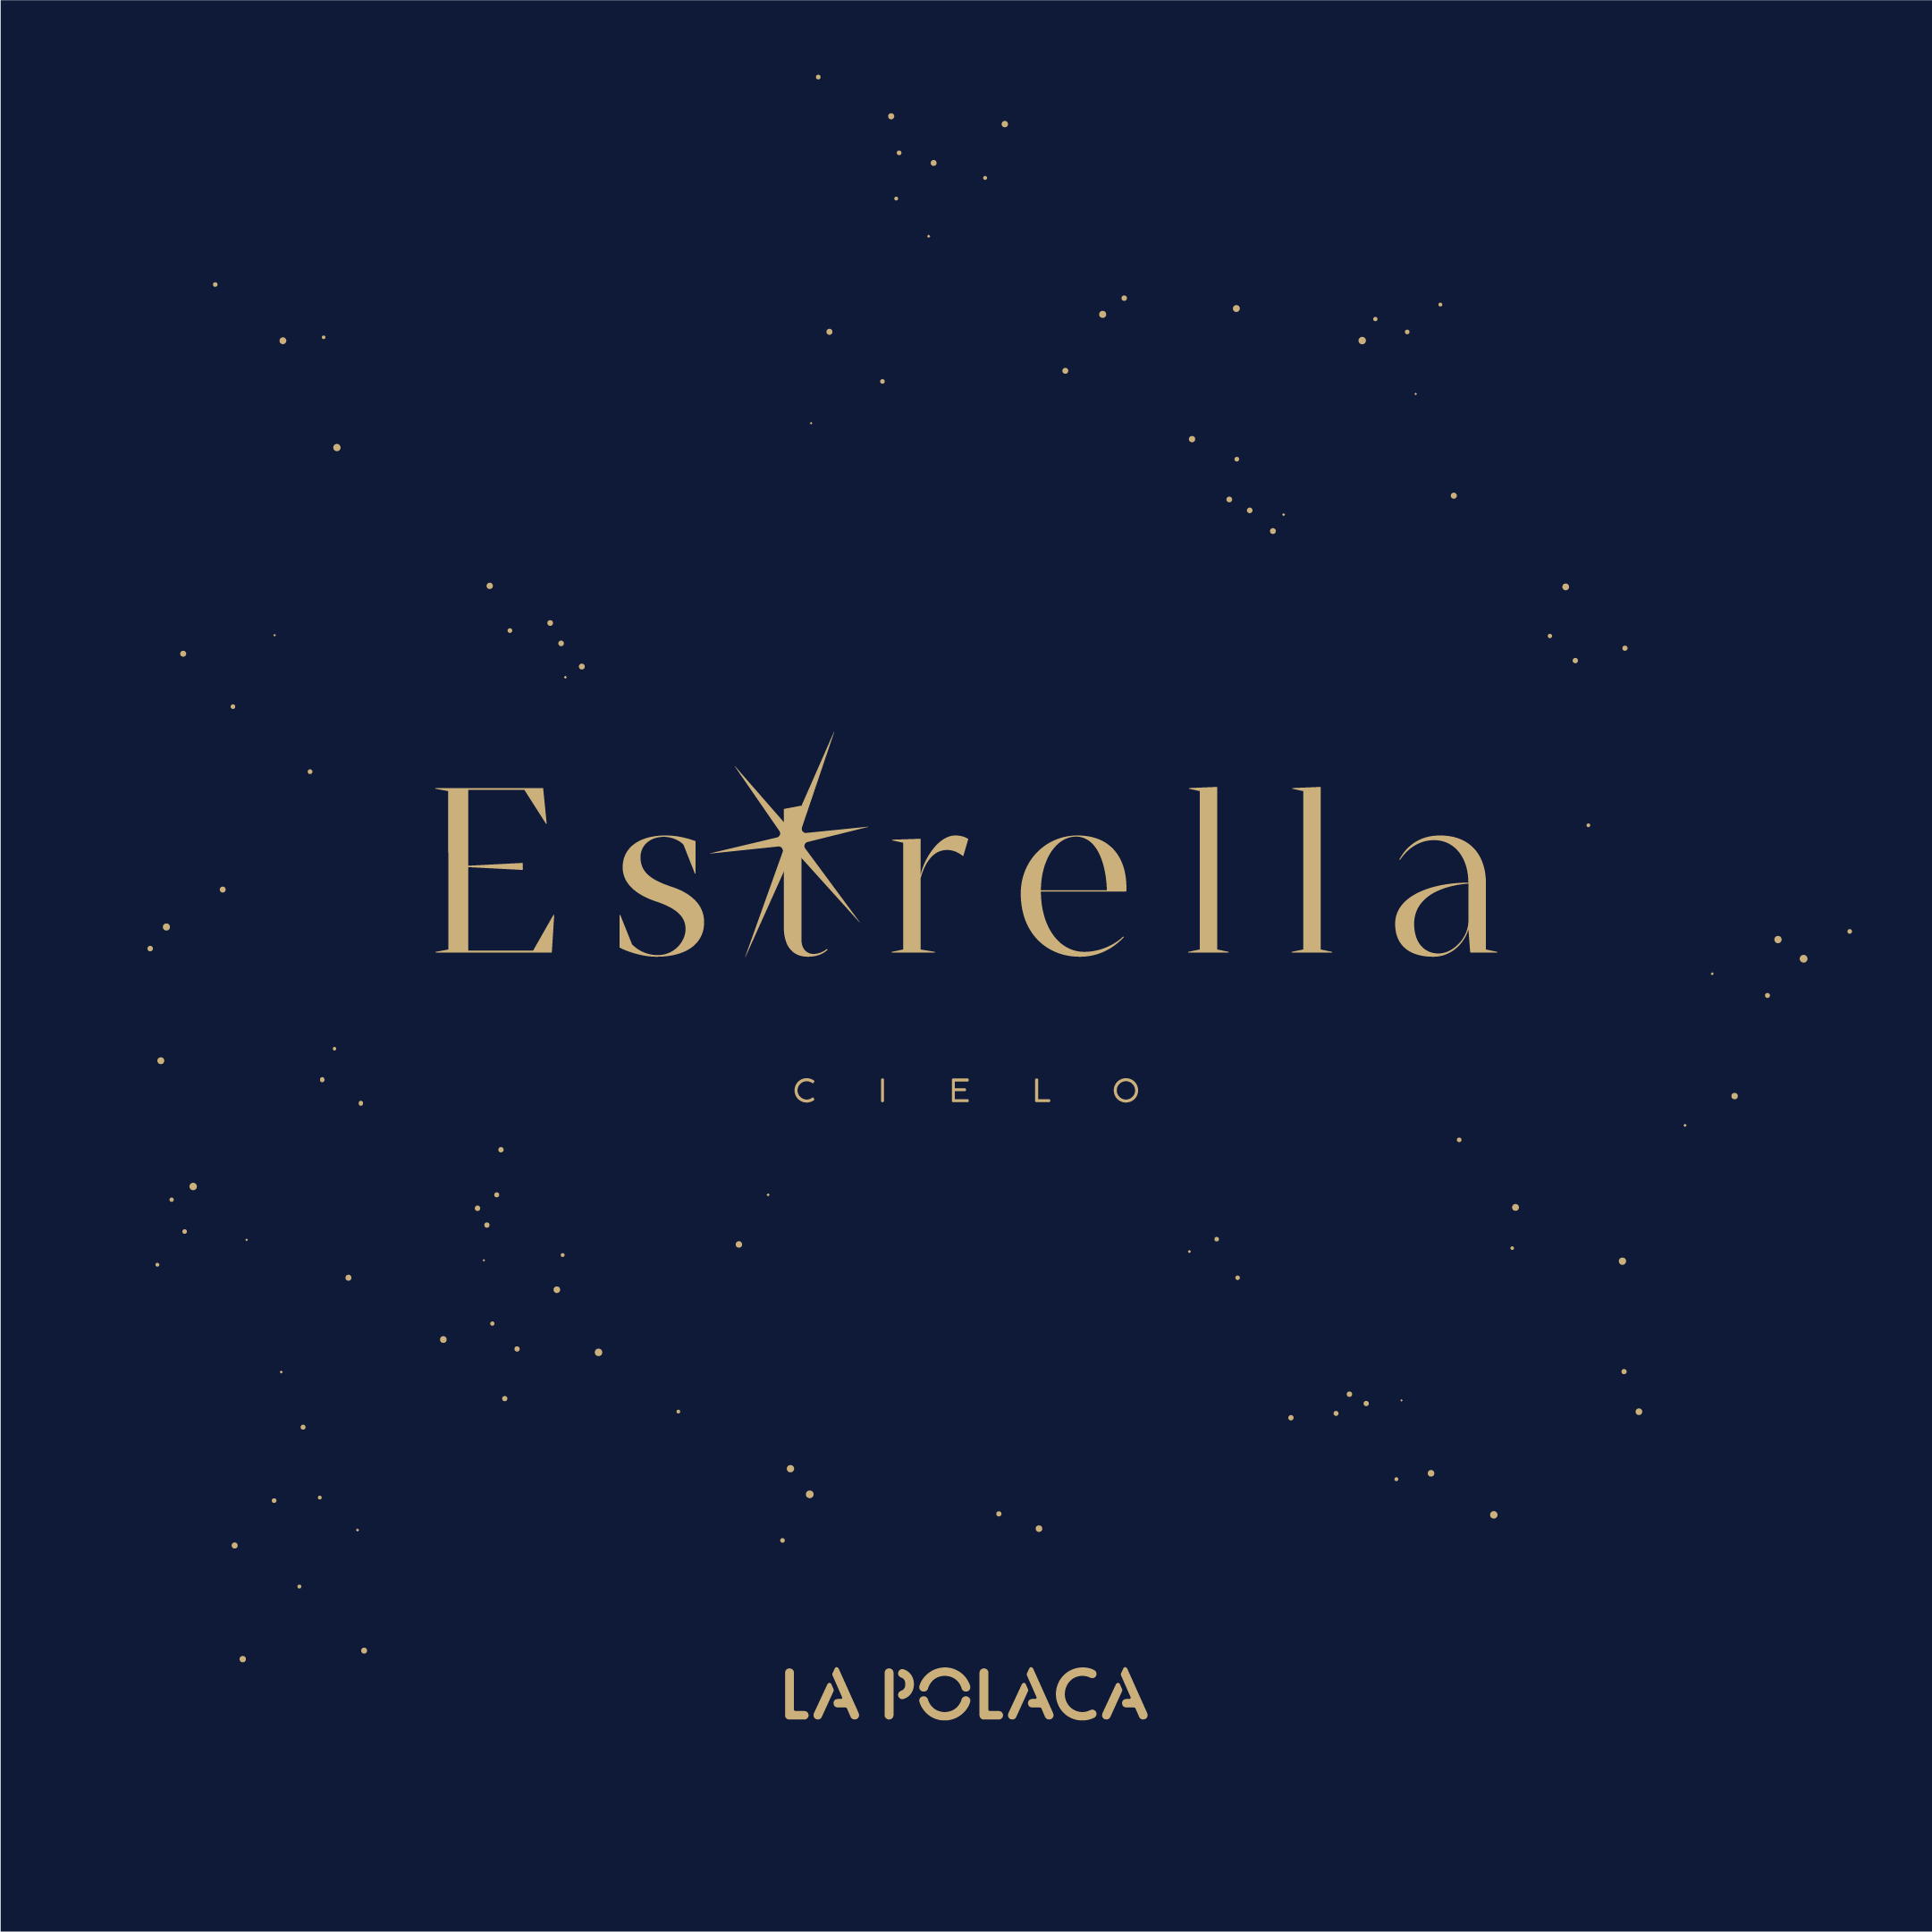 Diseño de logotipo y aplicación para La Polaca - Un trabajo de Silvia Calavera